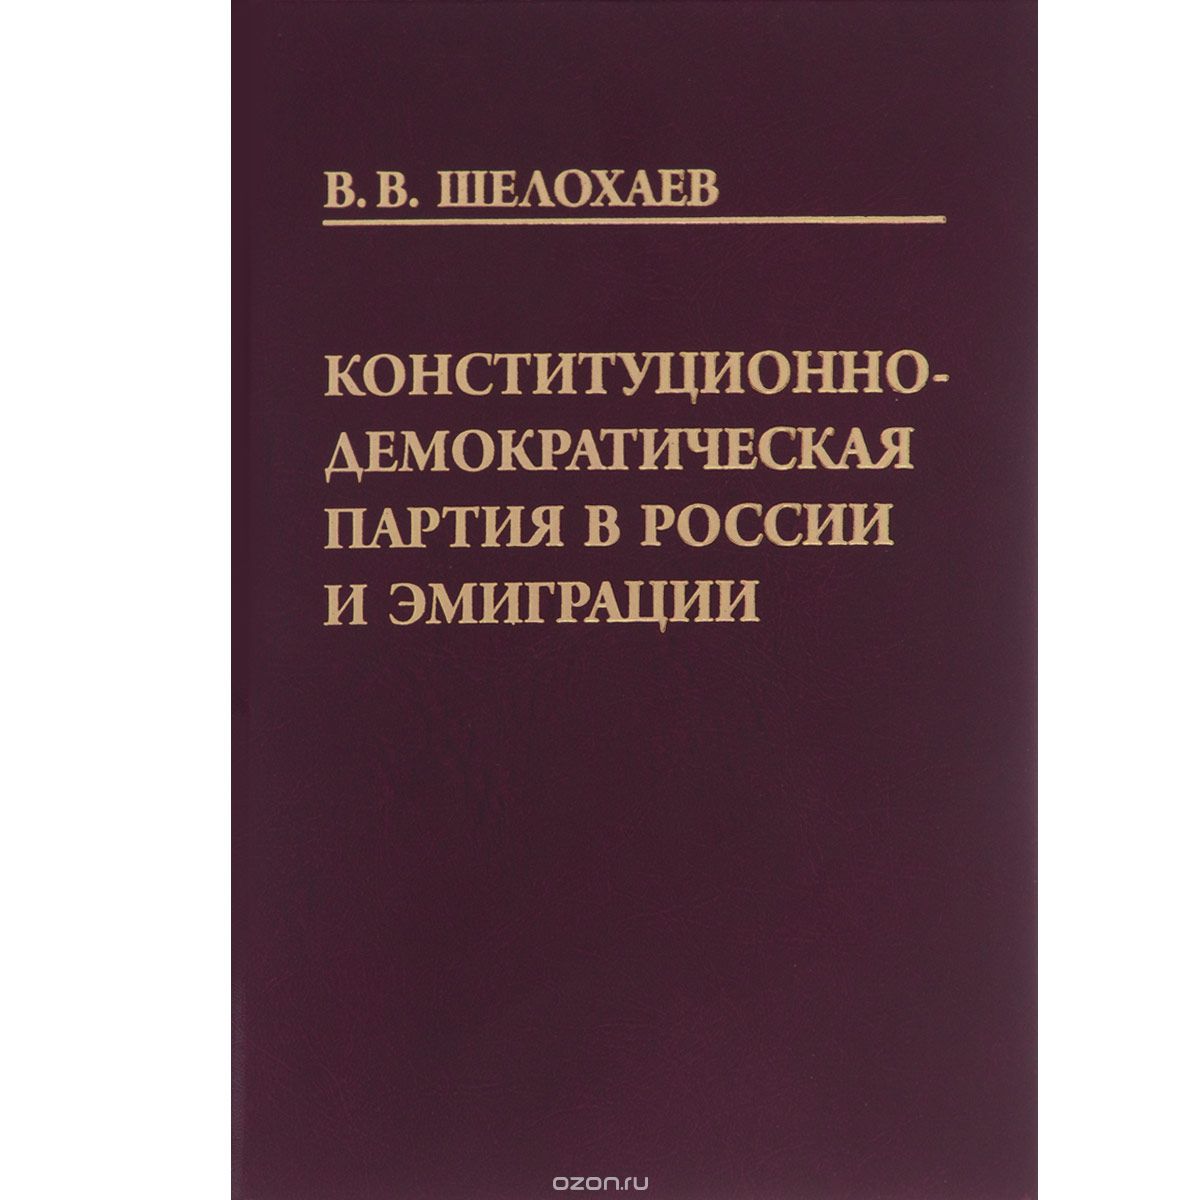 Скачать книгу "Конституционно-демократическая партия в России и эмиграции, В. В. Шелохаев"